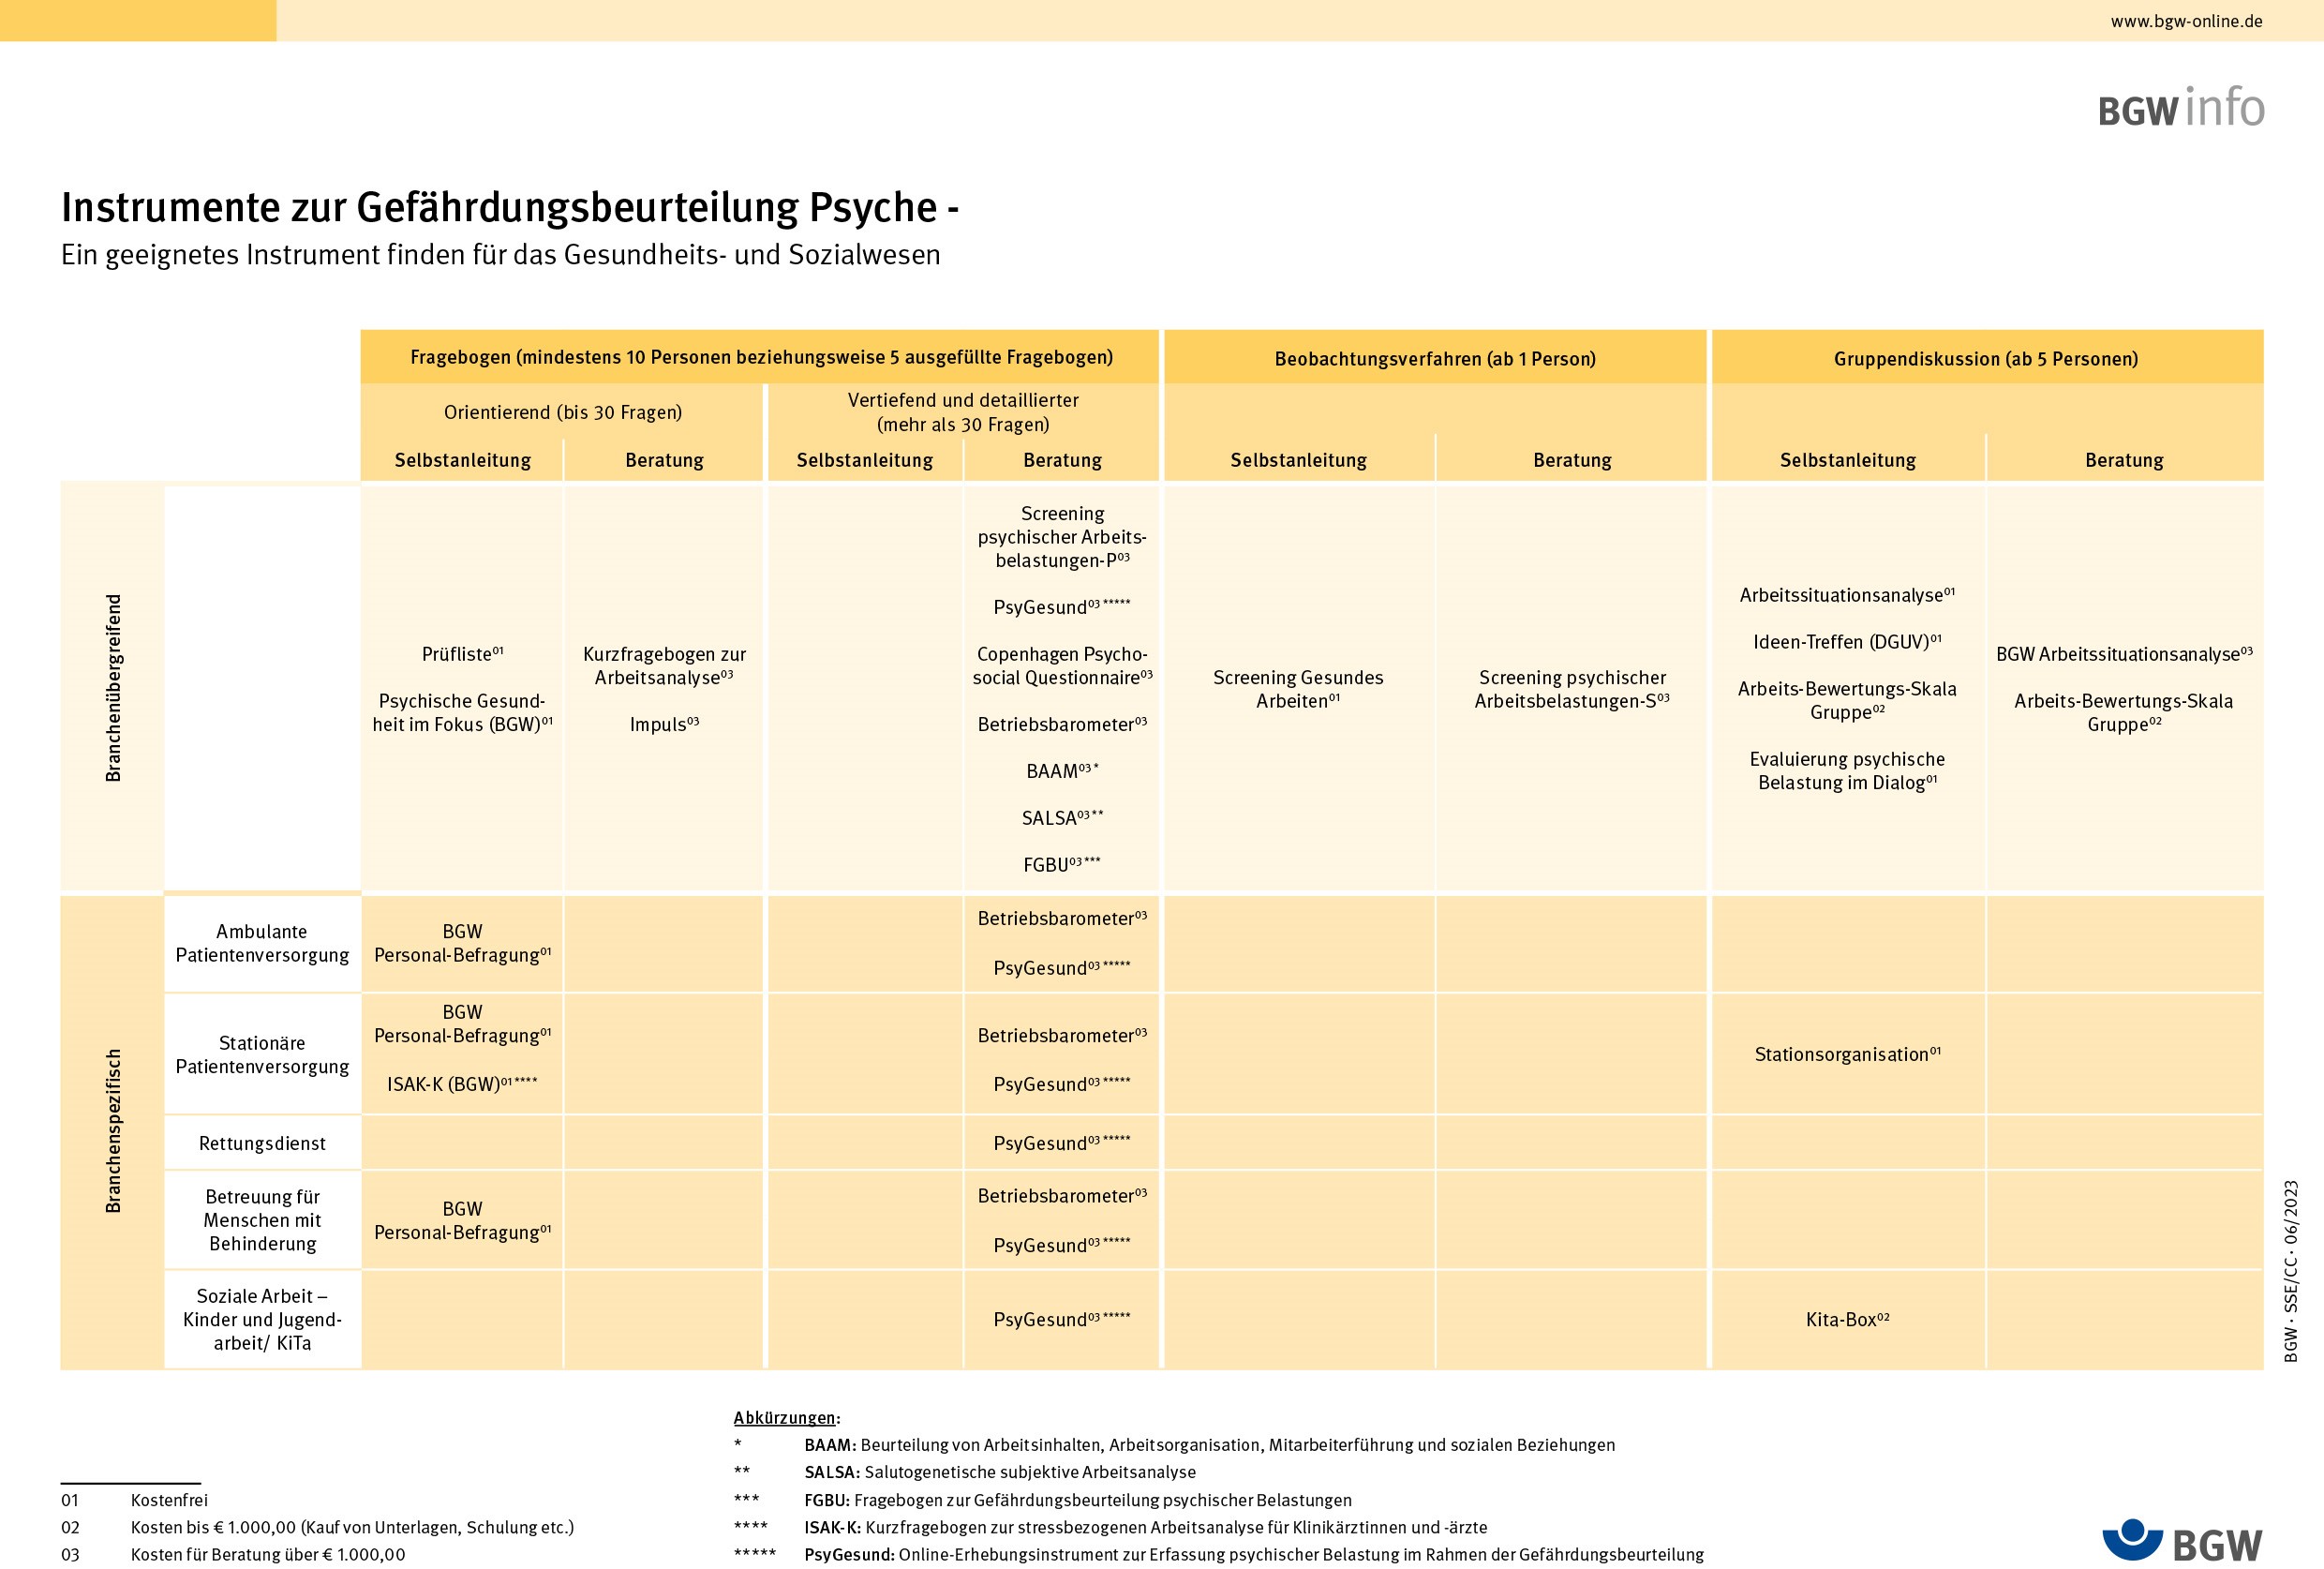 Darstellung einer Matrix in Tabellenform, welche eine Übersicht geeigneter Instrumente zur Gefährdungsbeurteilung psychischer Belastungen gibt. Eine barrierefreie pdf-Datei ist als Download beigefügt.